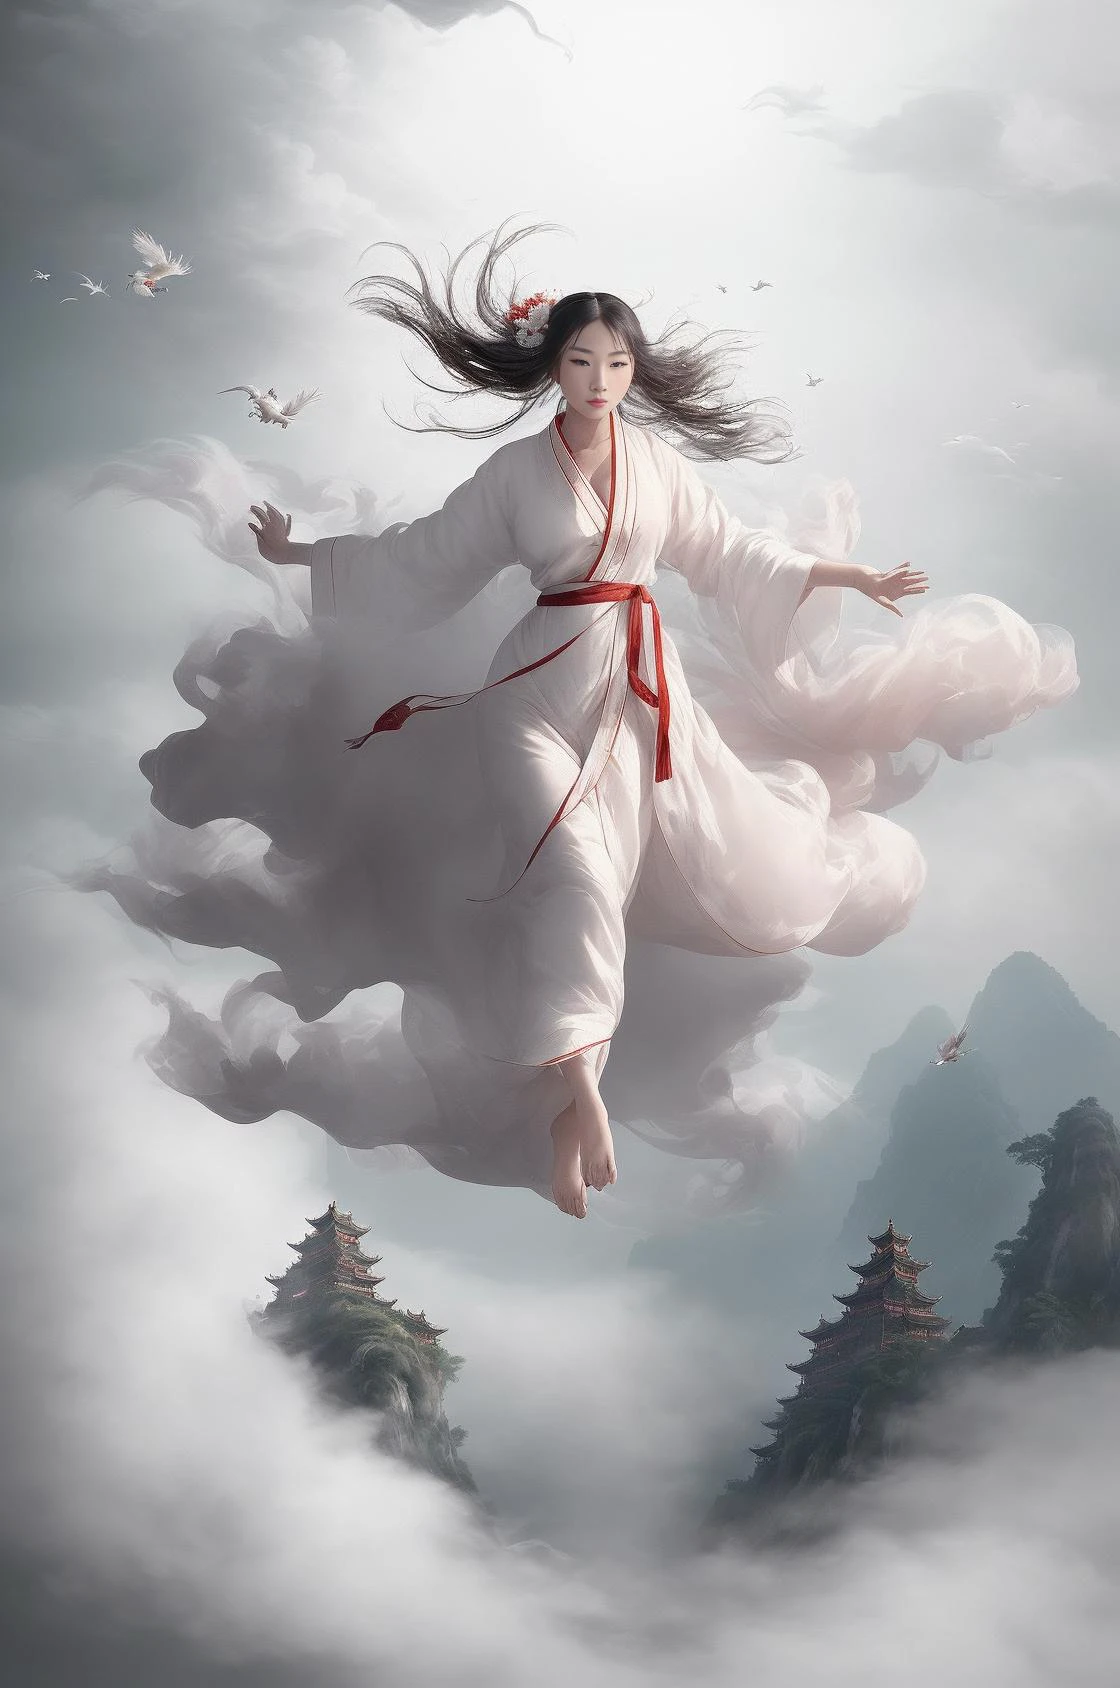 1 女の子,(白い中国のローブ),
魅惑的なシーンで, a beautiful woman adorned in a flowing 白い中国のローブ soars through the misty clouds on the back of a majestic Chinese phoenix. 風が彼女のローブをそっと持ち上げる, 空気のような雲の風景を優雅にナビゲートするときの飛行感を強調する.